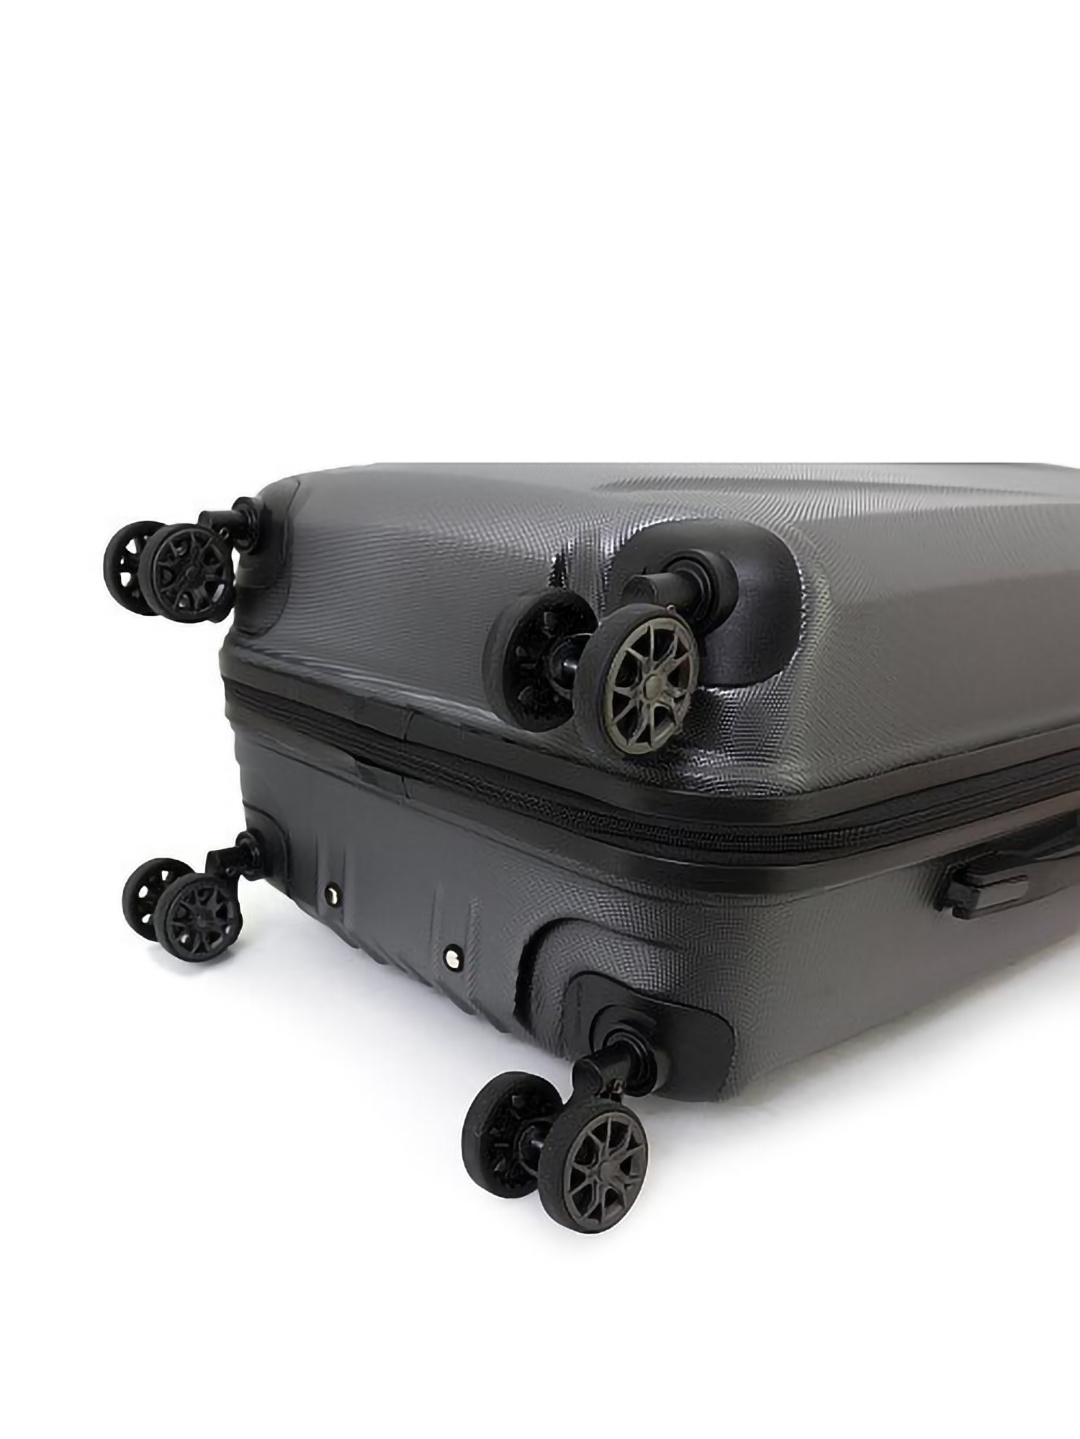 Фото Маленький чемодан на двойных колесах с амортизаторами серии Drive Чемоданы